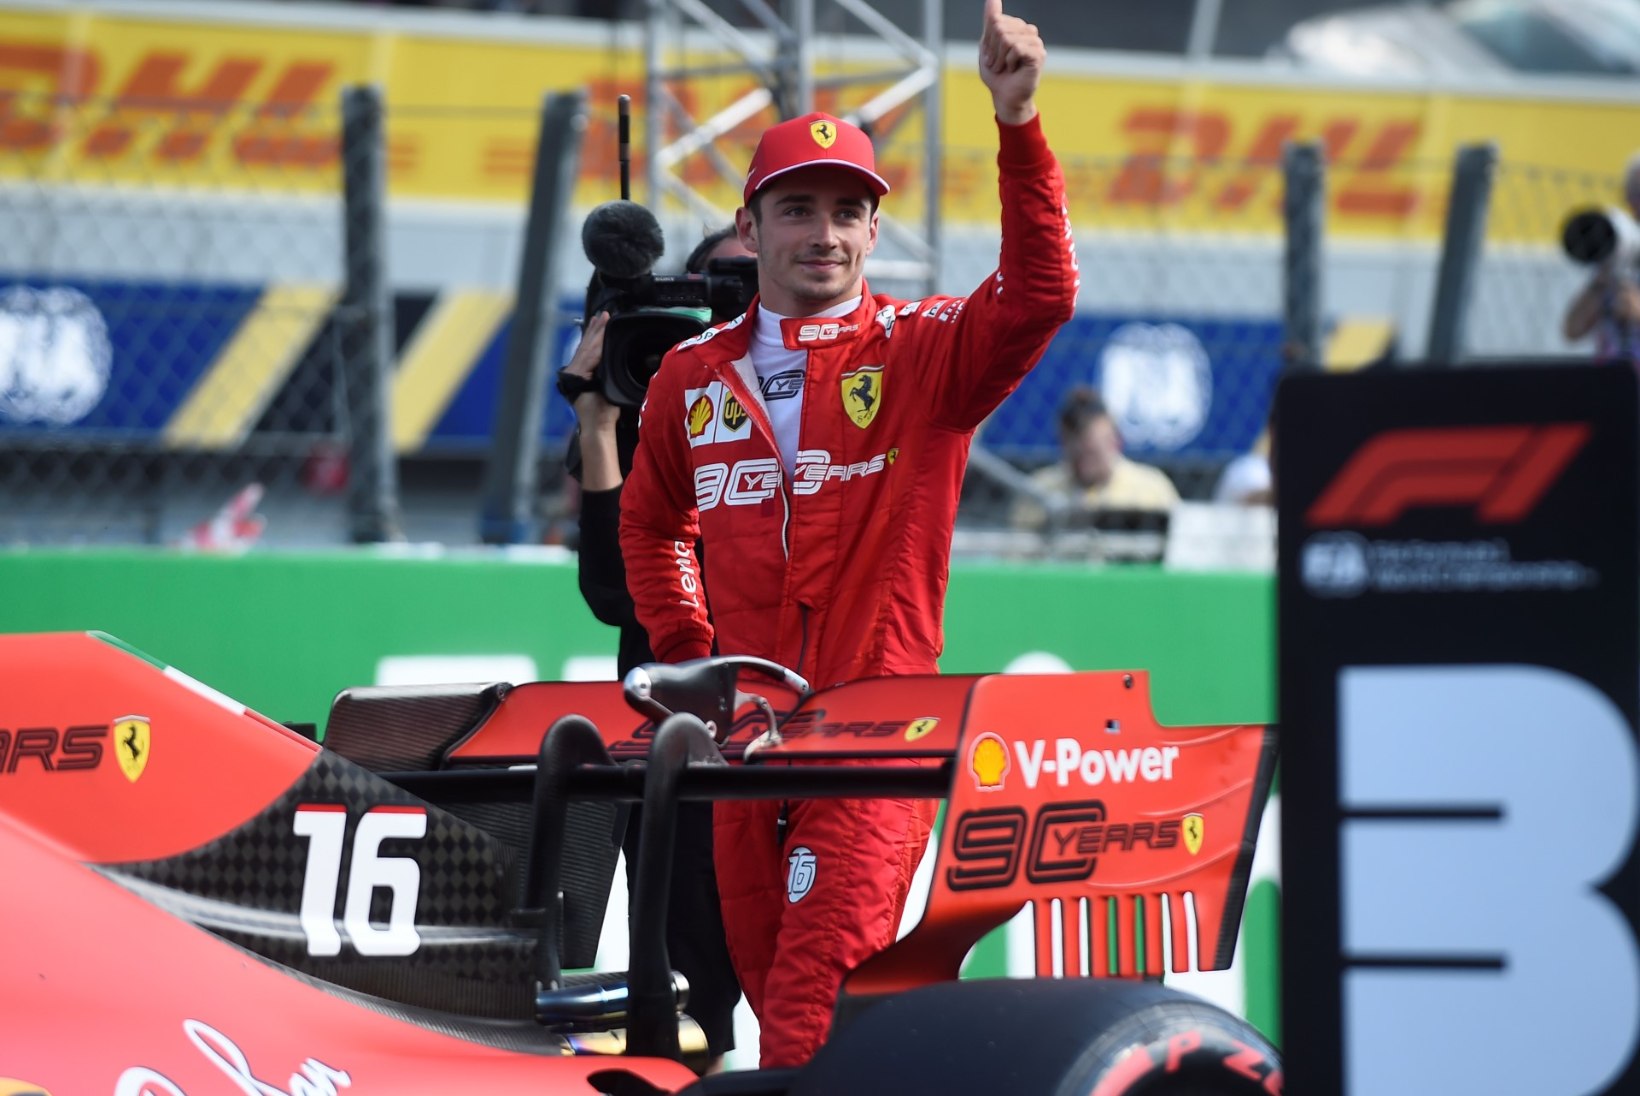 Itaalia GP: hiilgavas hoos noor Ferrari piloot jättis taas Hamiltoni ja Mercedesed seljataha